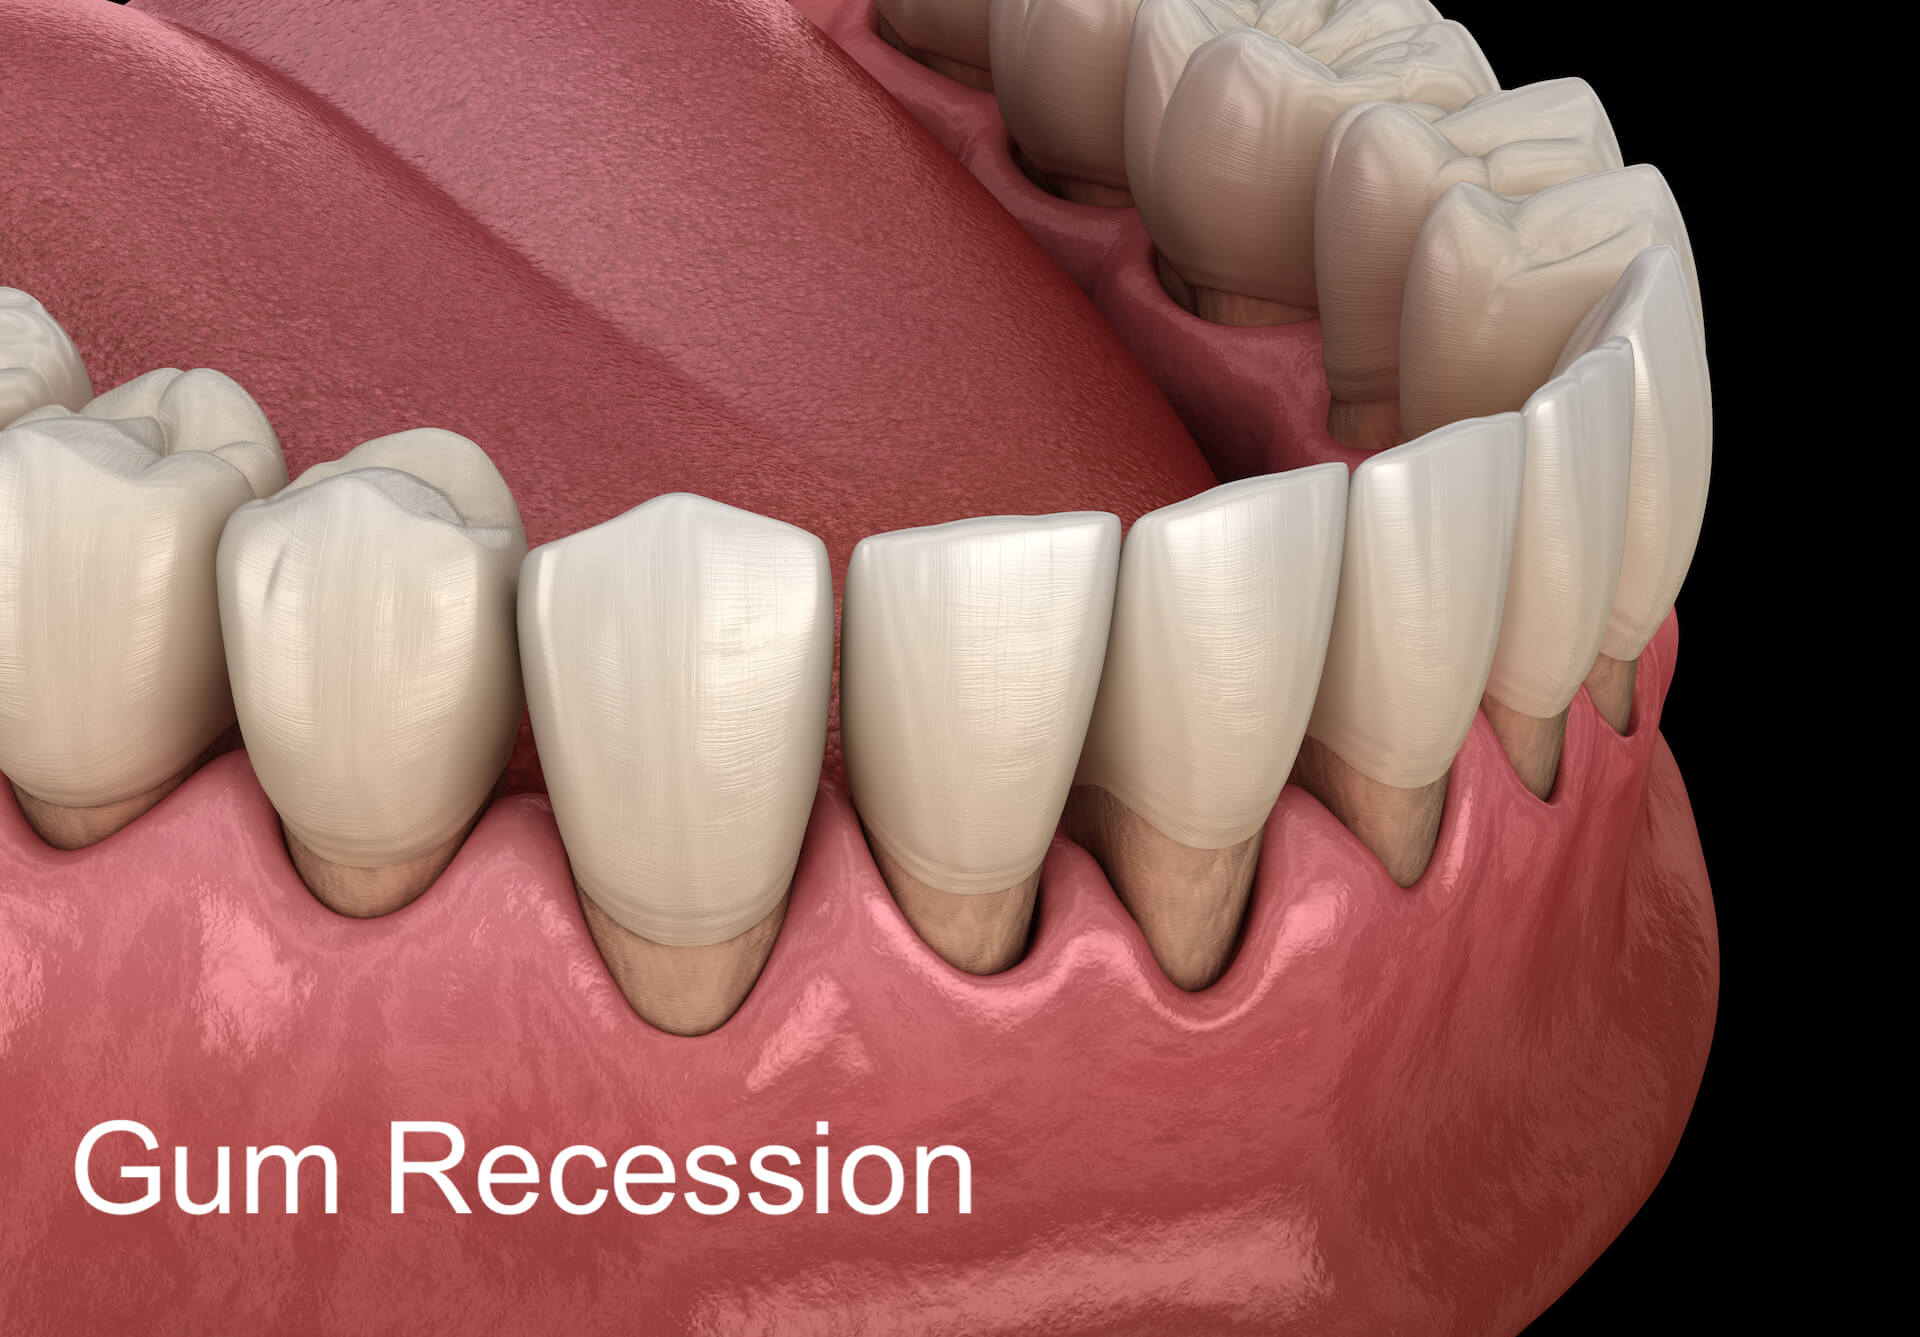 Gum recession illustration.